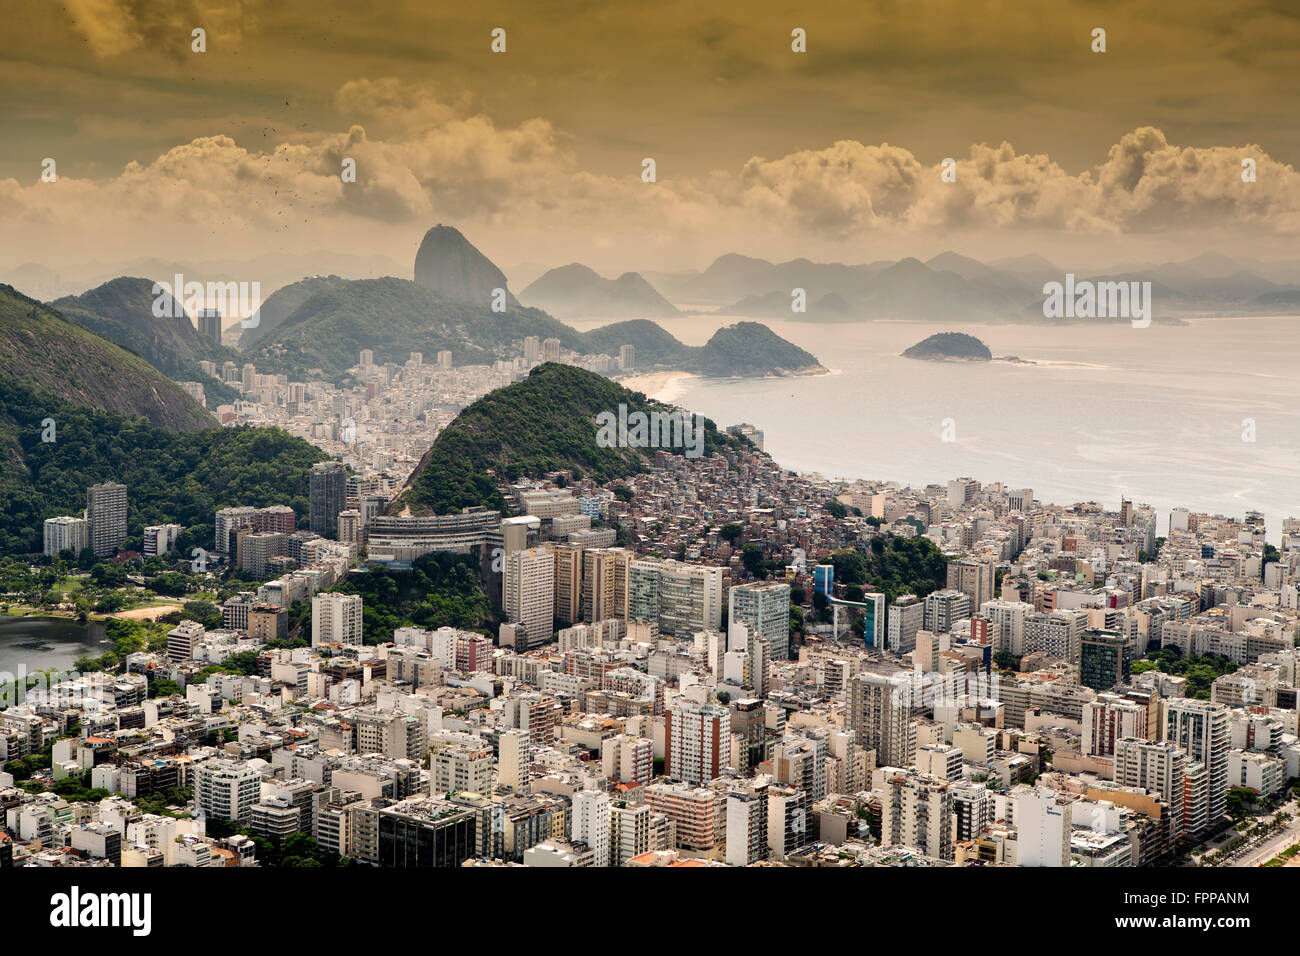 Die Skyline von Rio de Janeiro mit dem Zuckerhut, dem Ipanema, den Stadtvierteln der Costa Rica, Favela-Slums um die Hügel und den Atlantischen Ozean, Brasilien Stockfoto